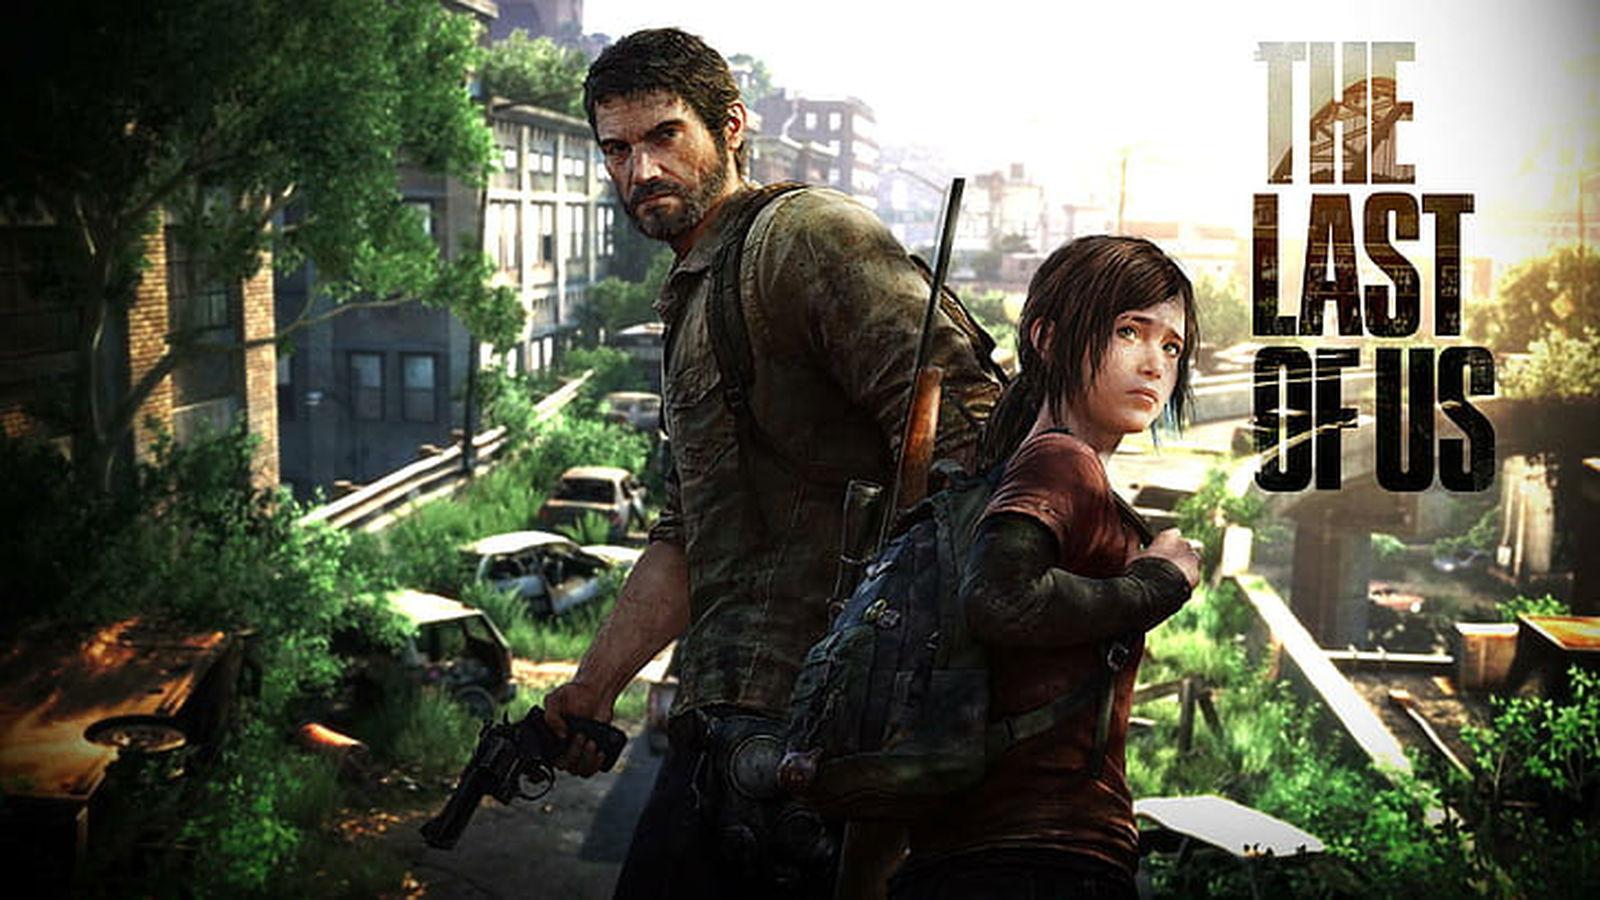 The Last of Us'ın yeni sezonu 2025'te hayranlarıyla buluşacak.